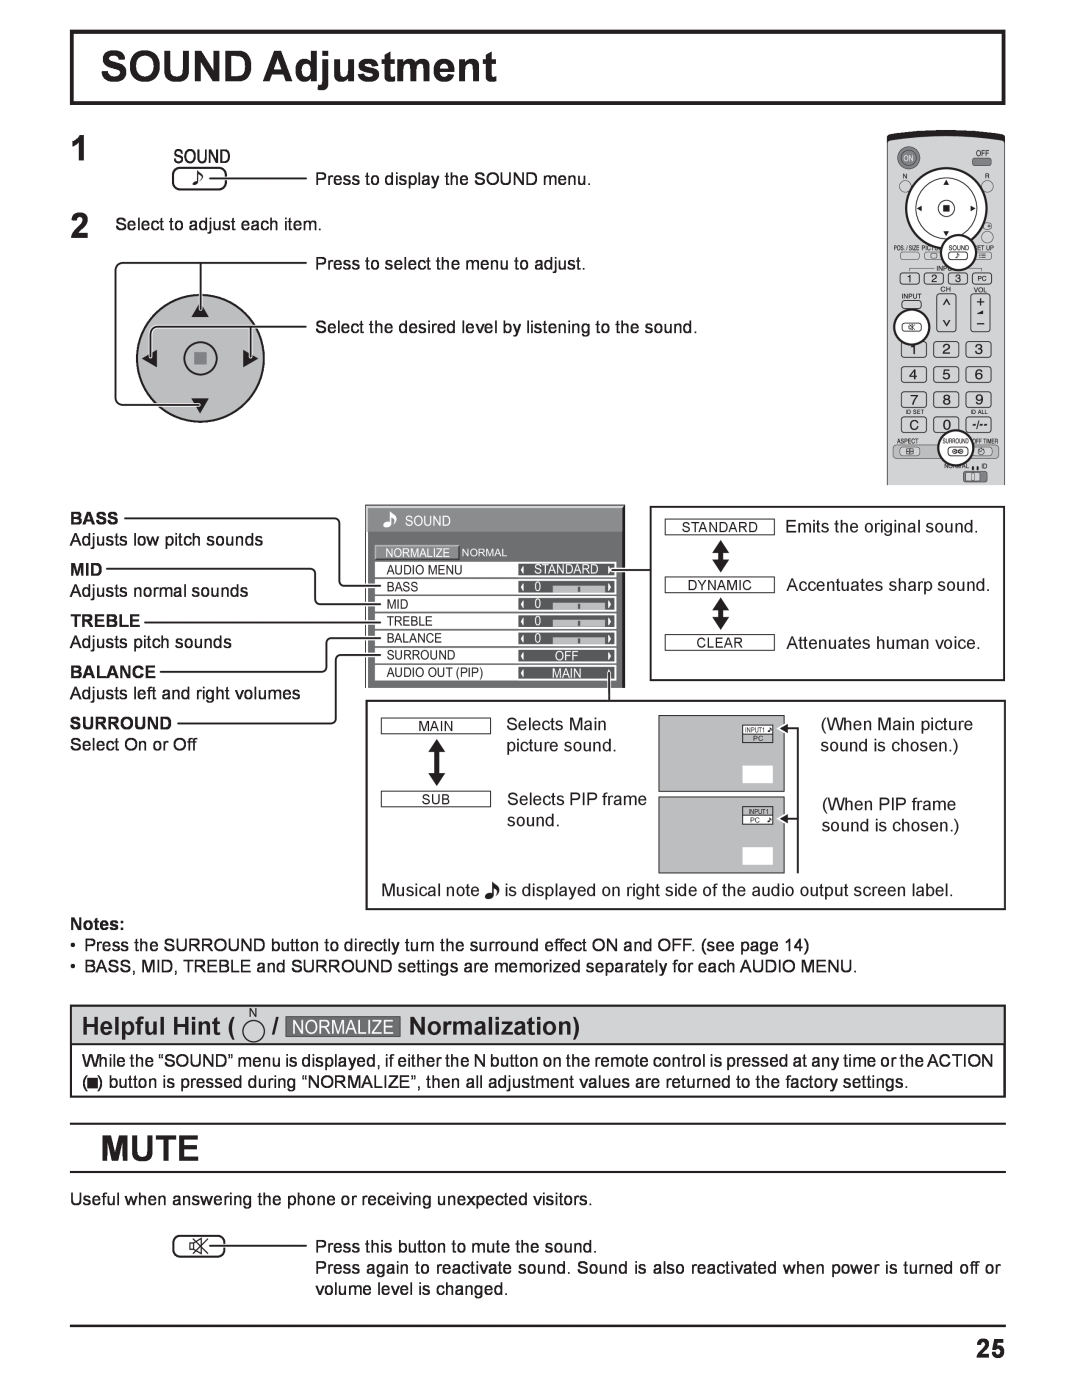 Panasonic TQBC2033 manual SOUND Adjustment, Mute, Helpful Hint, Normalization, Normalize 